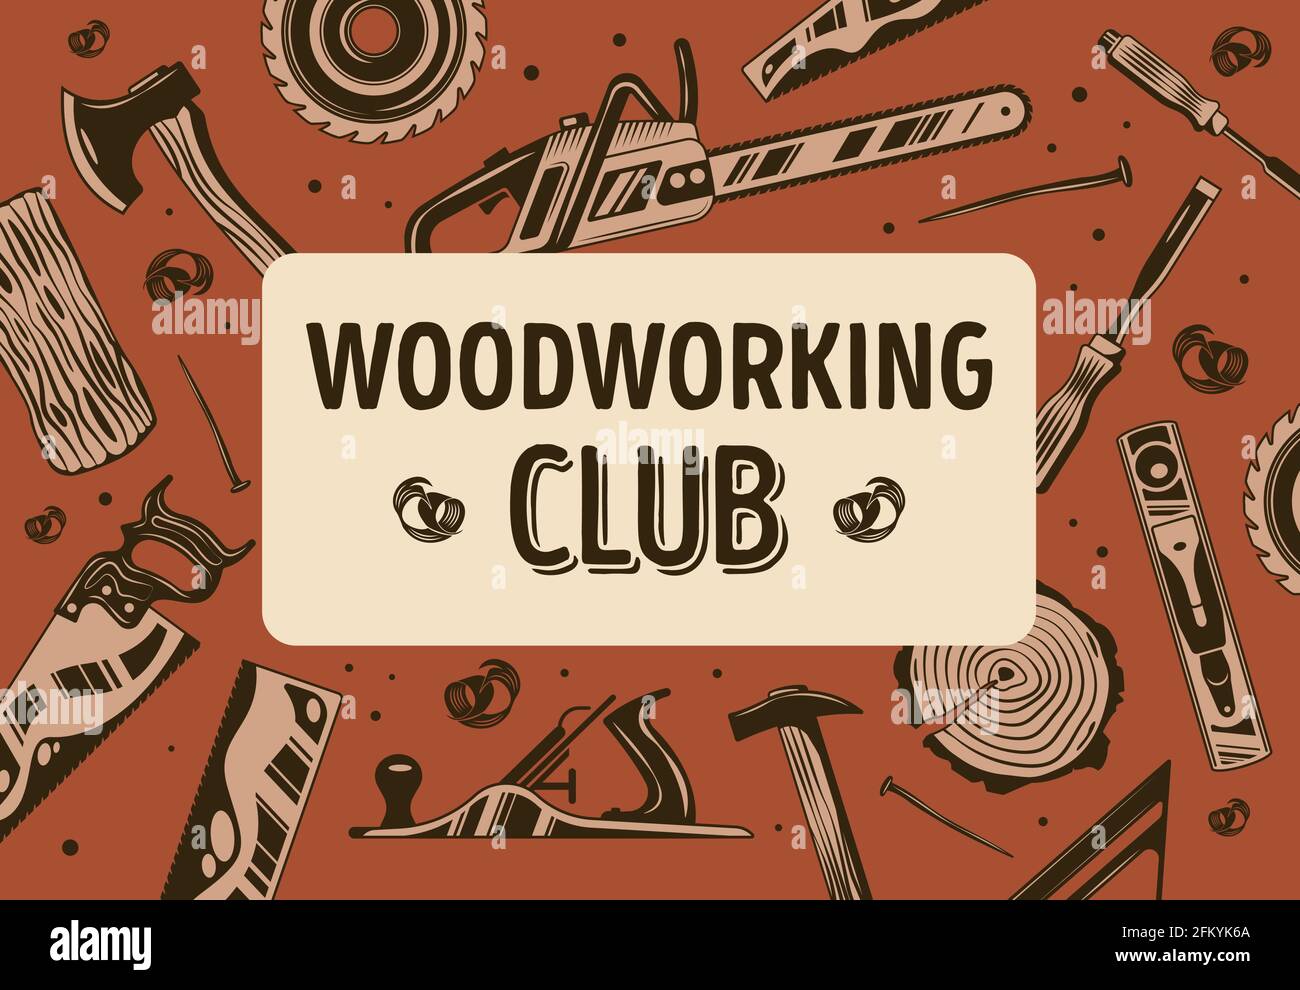 Abstrakter Rahmen des Holzarbeiterclubs mit Holzfällersägewerk und Schreinerei-Ausrüstung Flache Vektorgrafik Stock Vektor